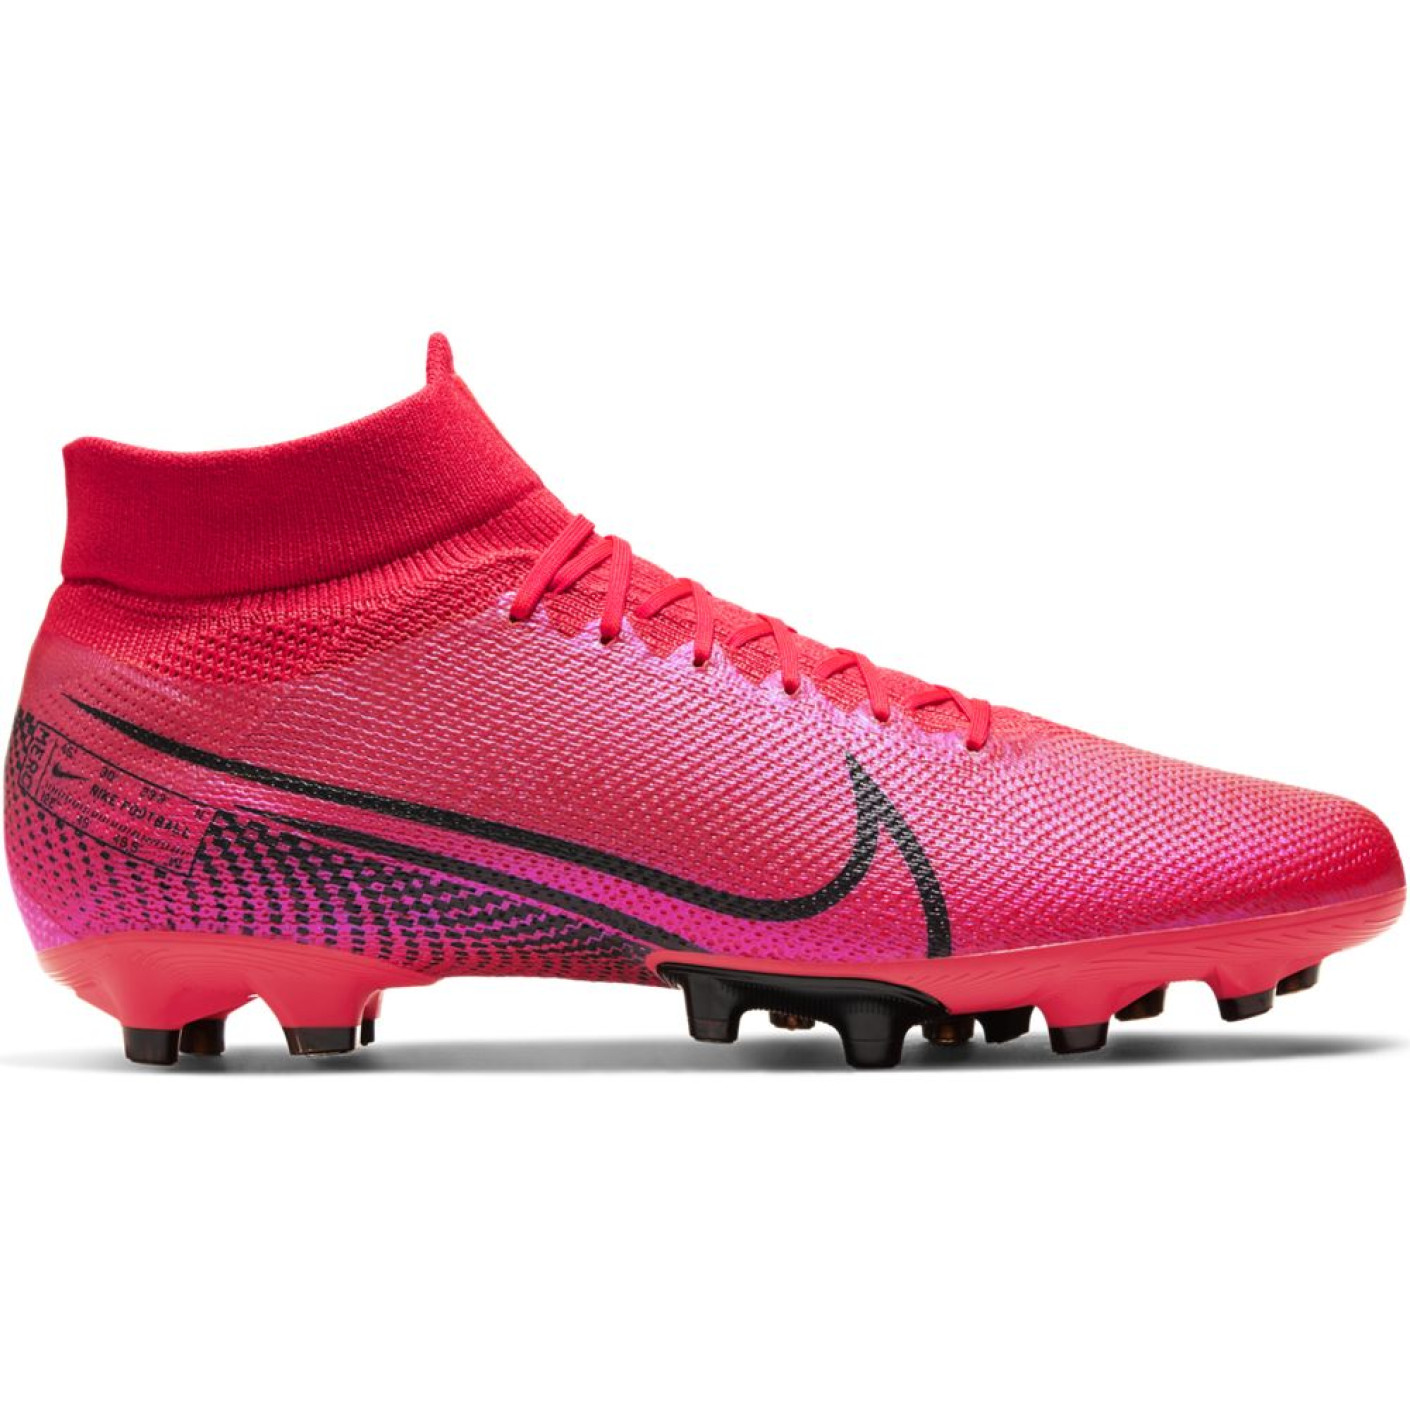 Van streek leven geld Nike Mercurial Superfly 7 Pro Kunstgras Voetbalschoenen (AG) Roze Zwart